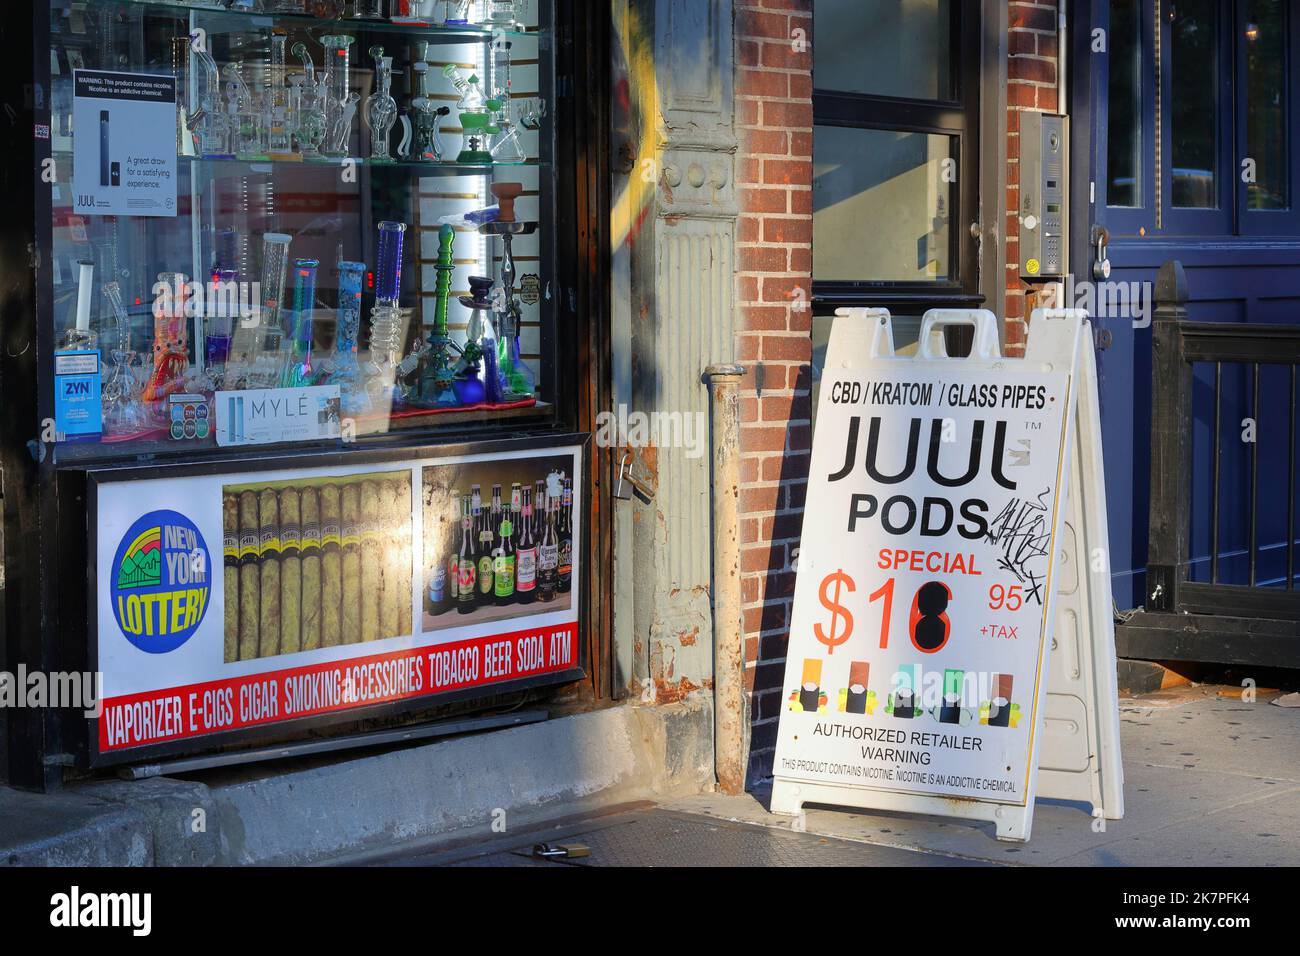 Un magasin de fumée de New York avec des tuyaux d'eau dans la vitrine et des publicités pour les gousses Juul, les vapes, les billets de loterie et la bière. Banque D'Images